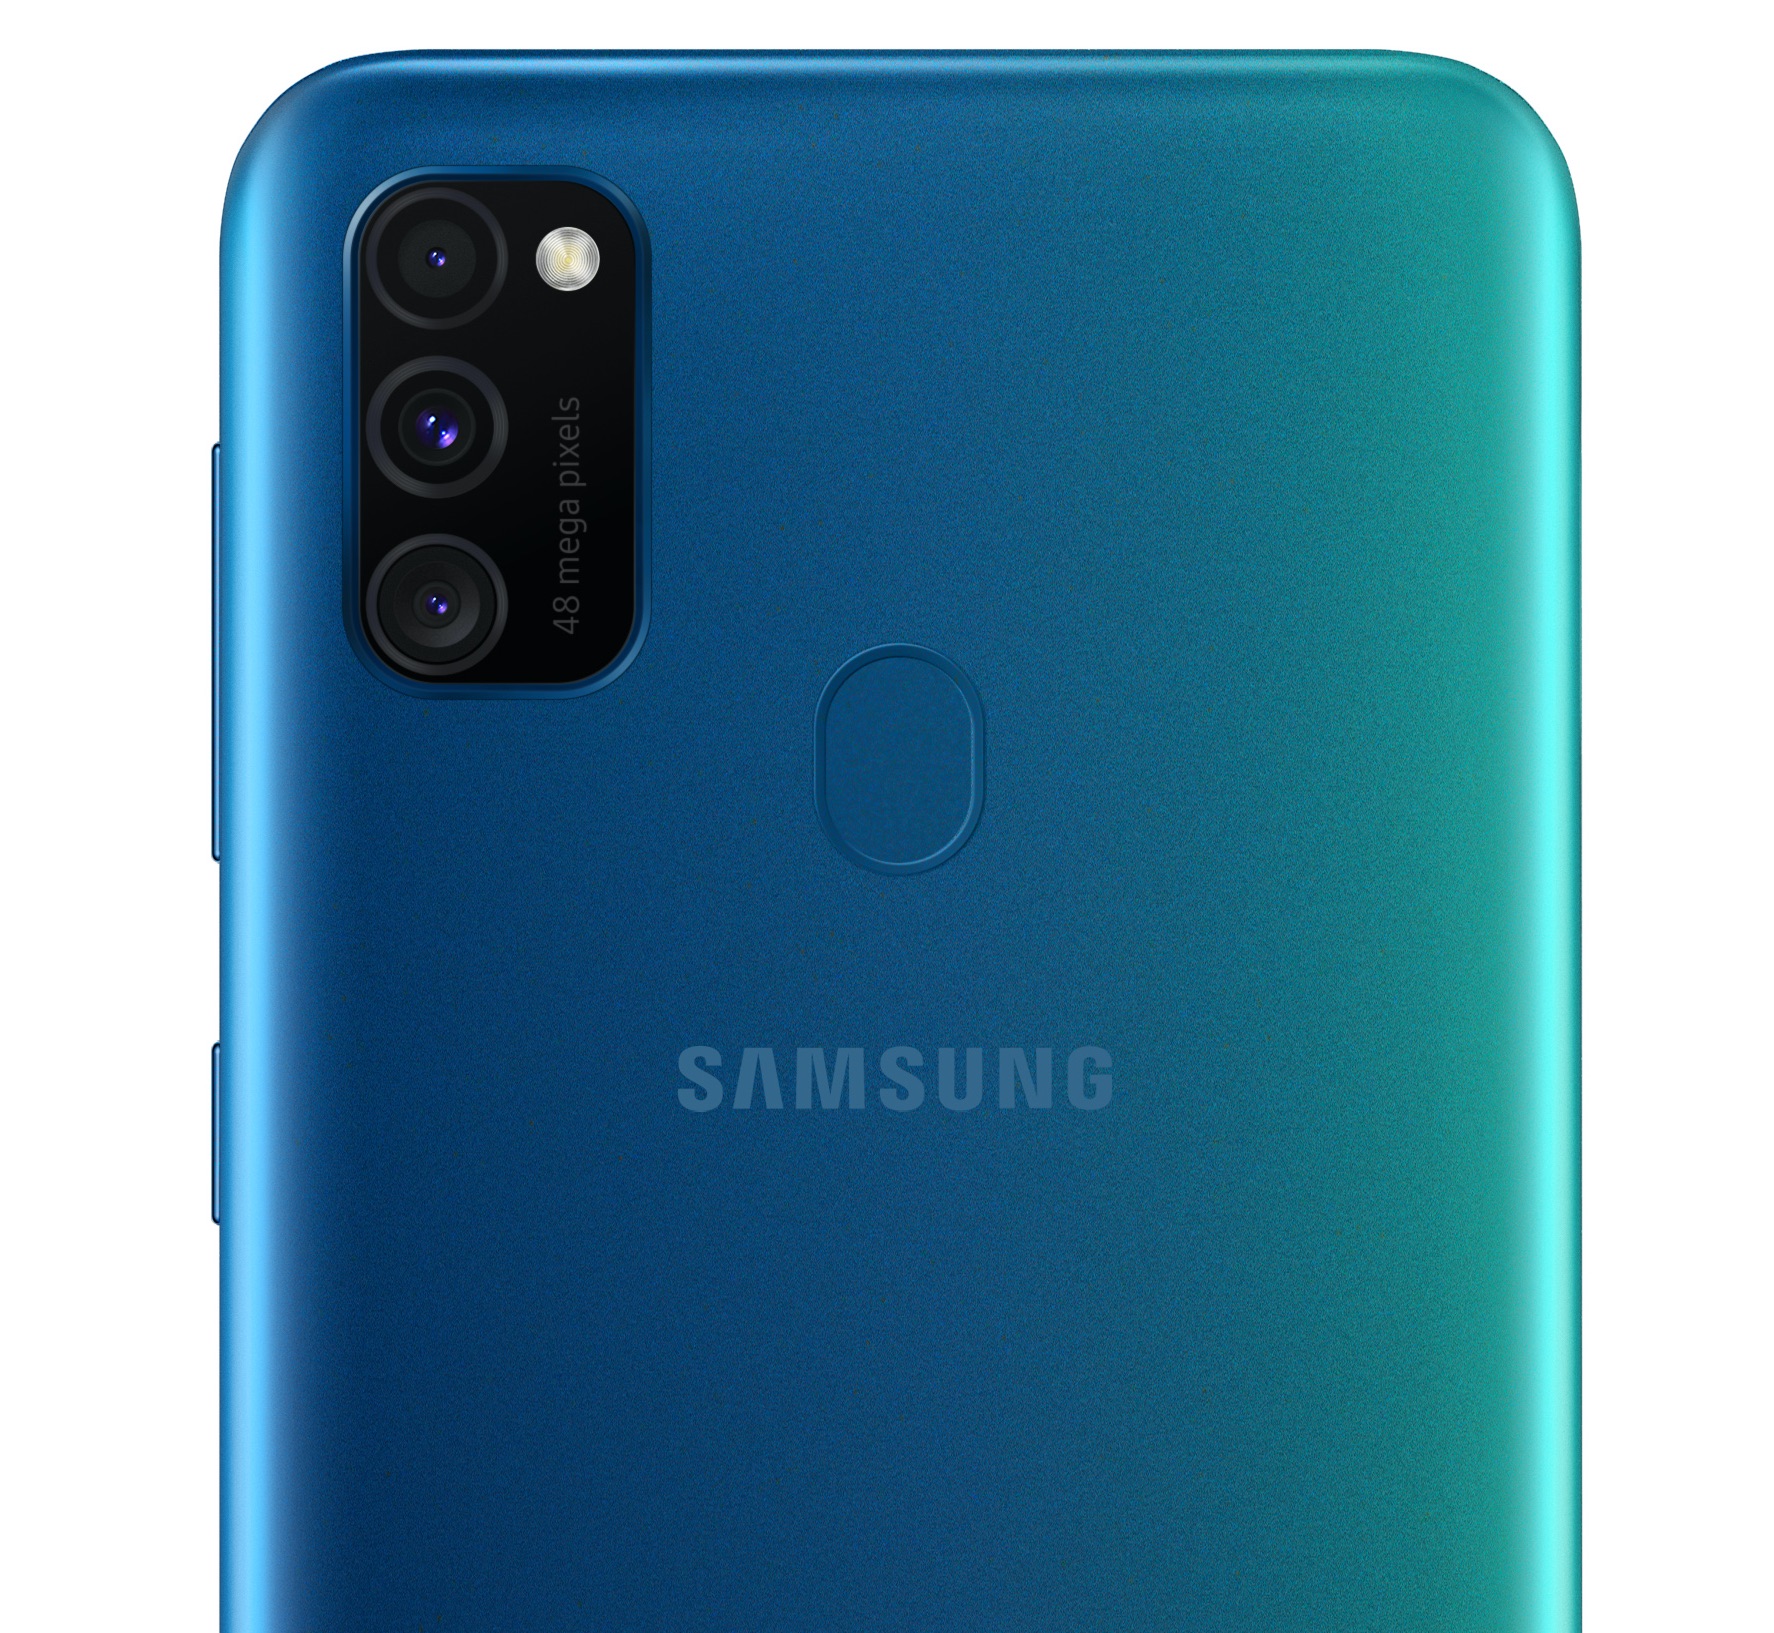 Samsung Smartphone-Kamera